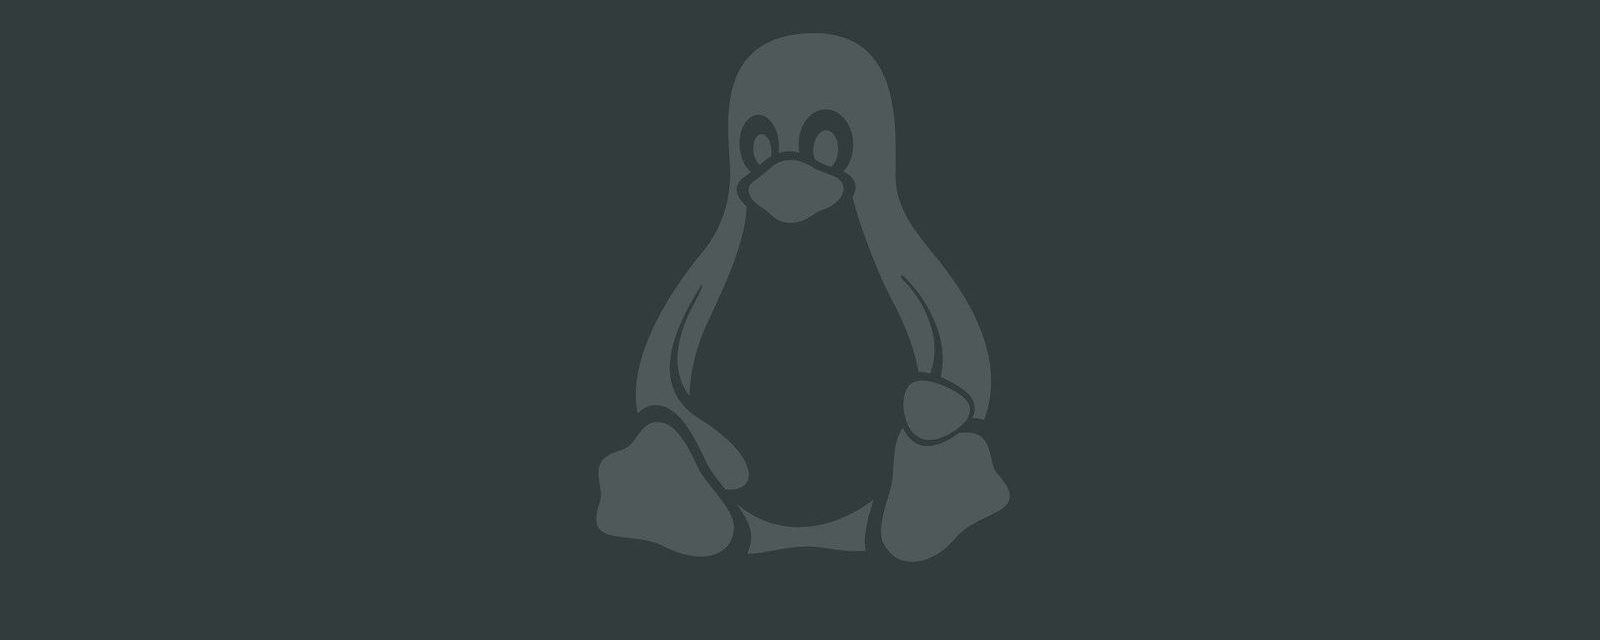 La mascotte Tux de Linux